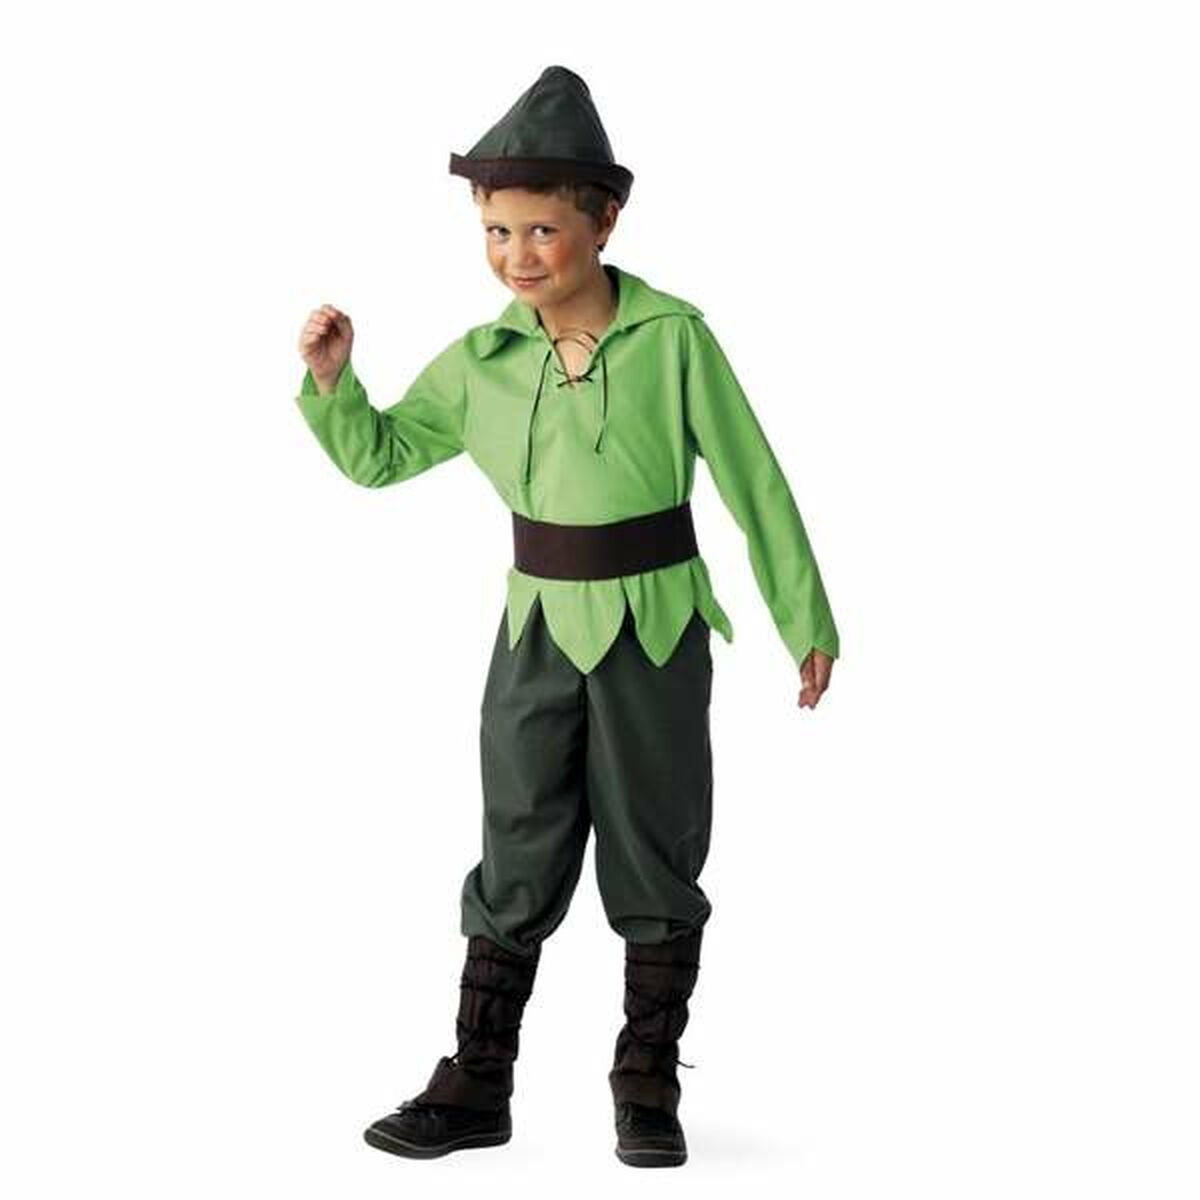 Verkleidung für Kinder Limit Costumes grün Elf 5 Stücke